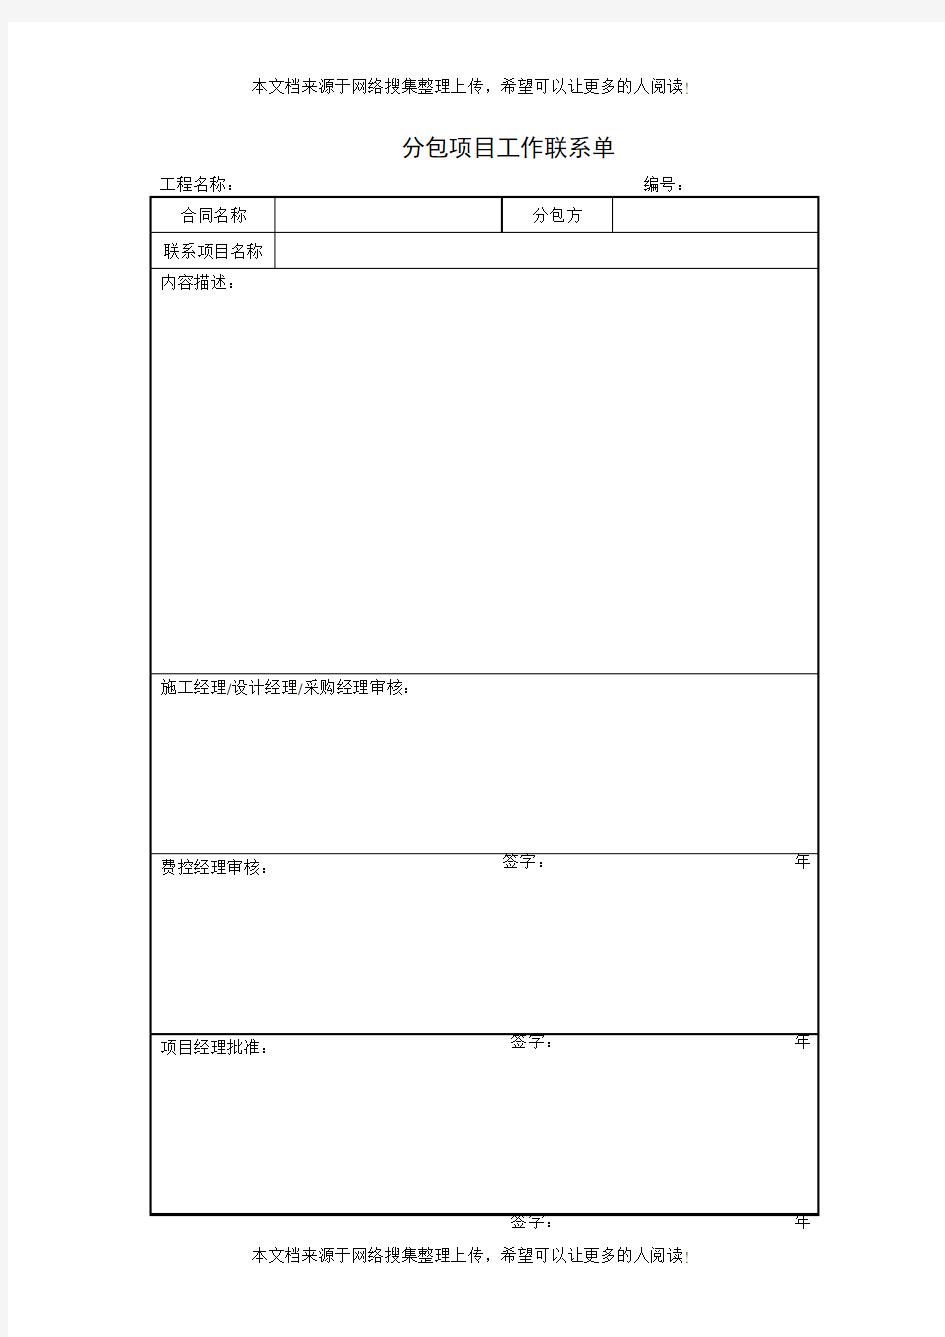 分包项目工作联系单(项目施工管理表格)